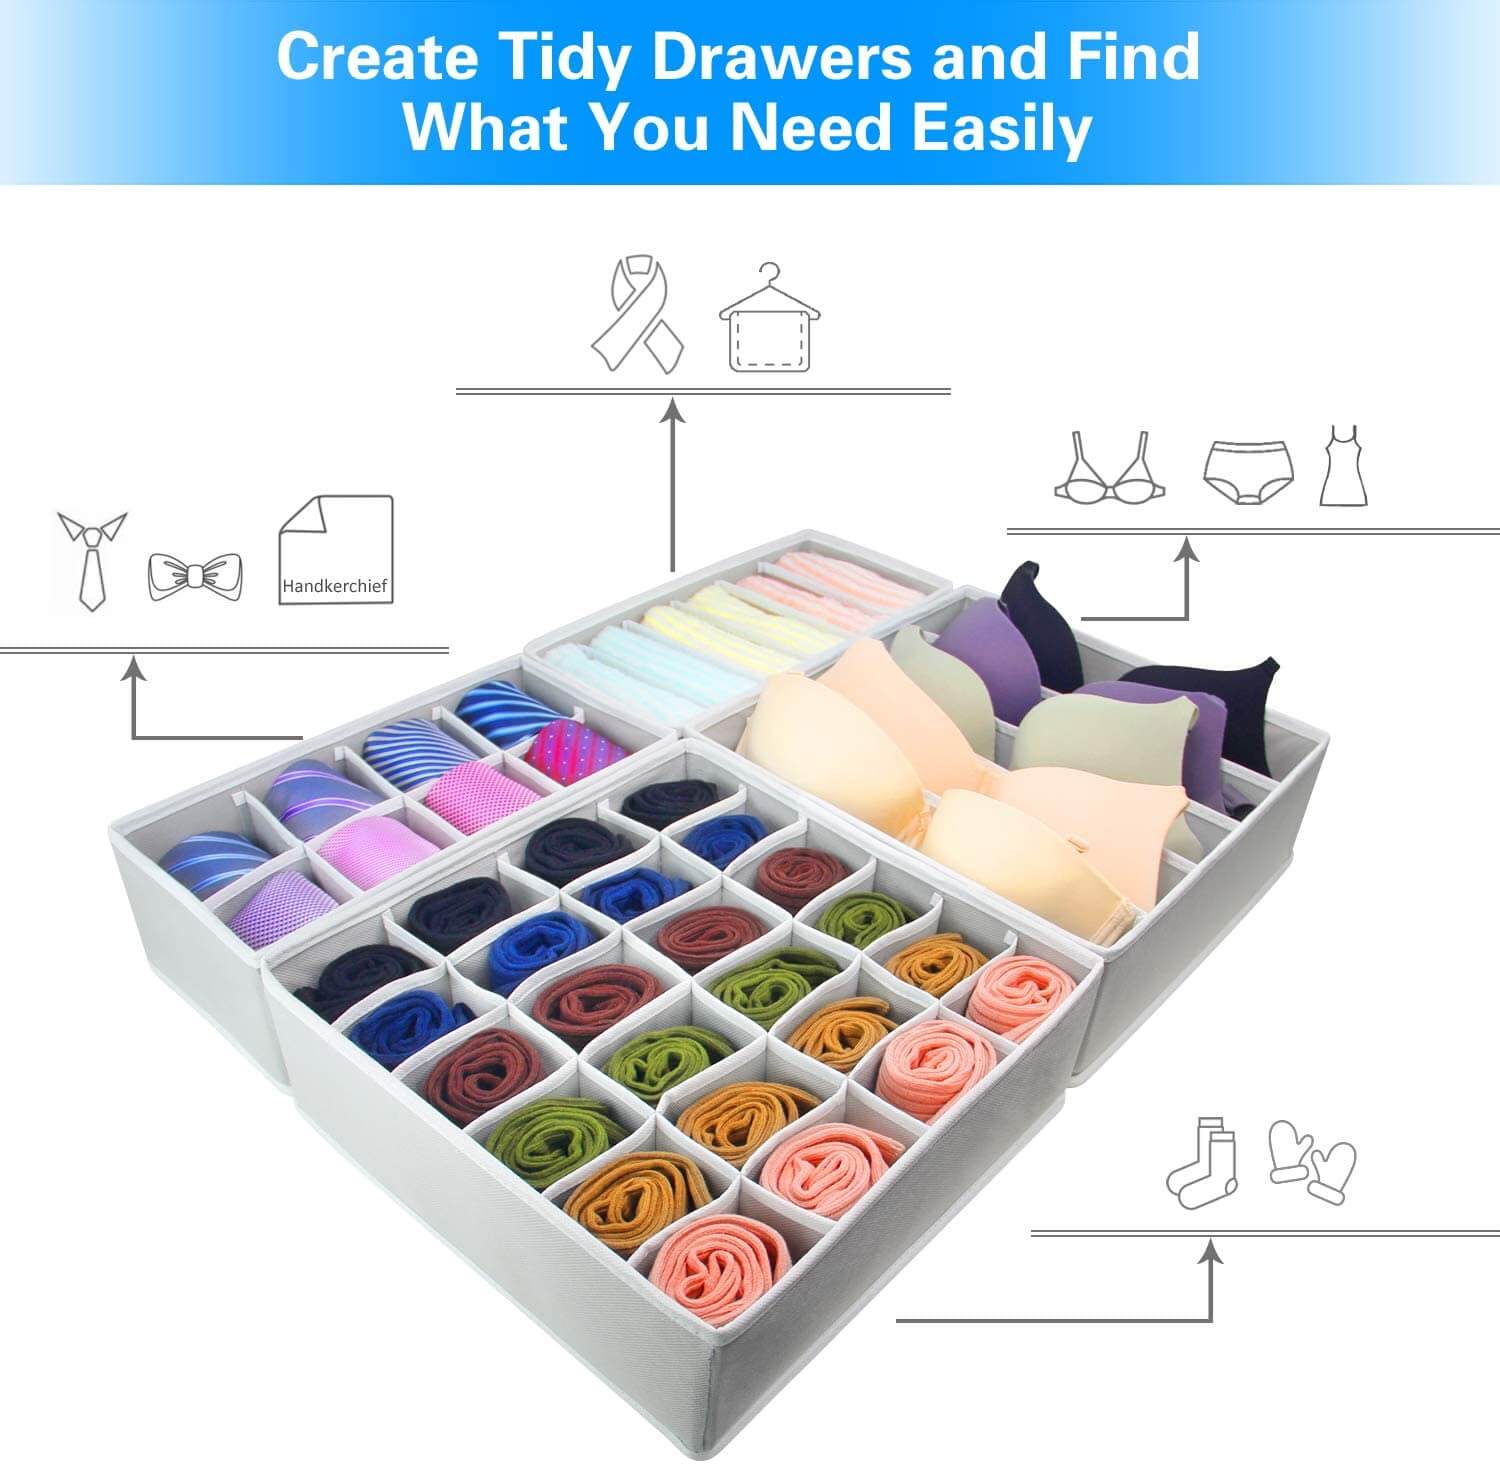 BlushBees® Kids Fabric Dresser Drawer/Closet Storage Organizer Bin